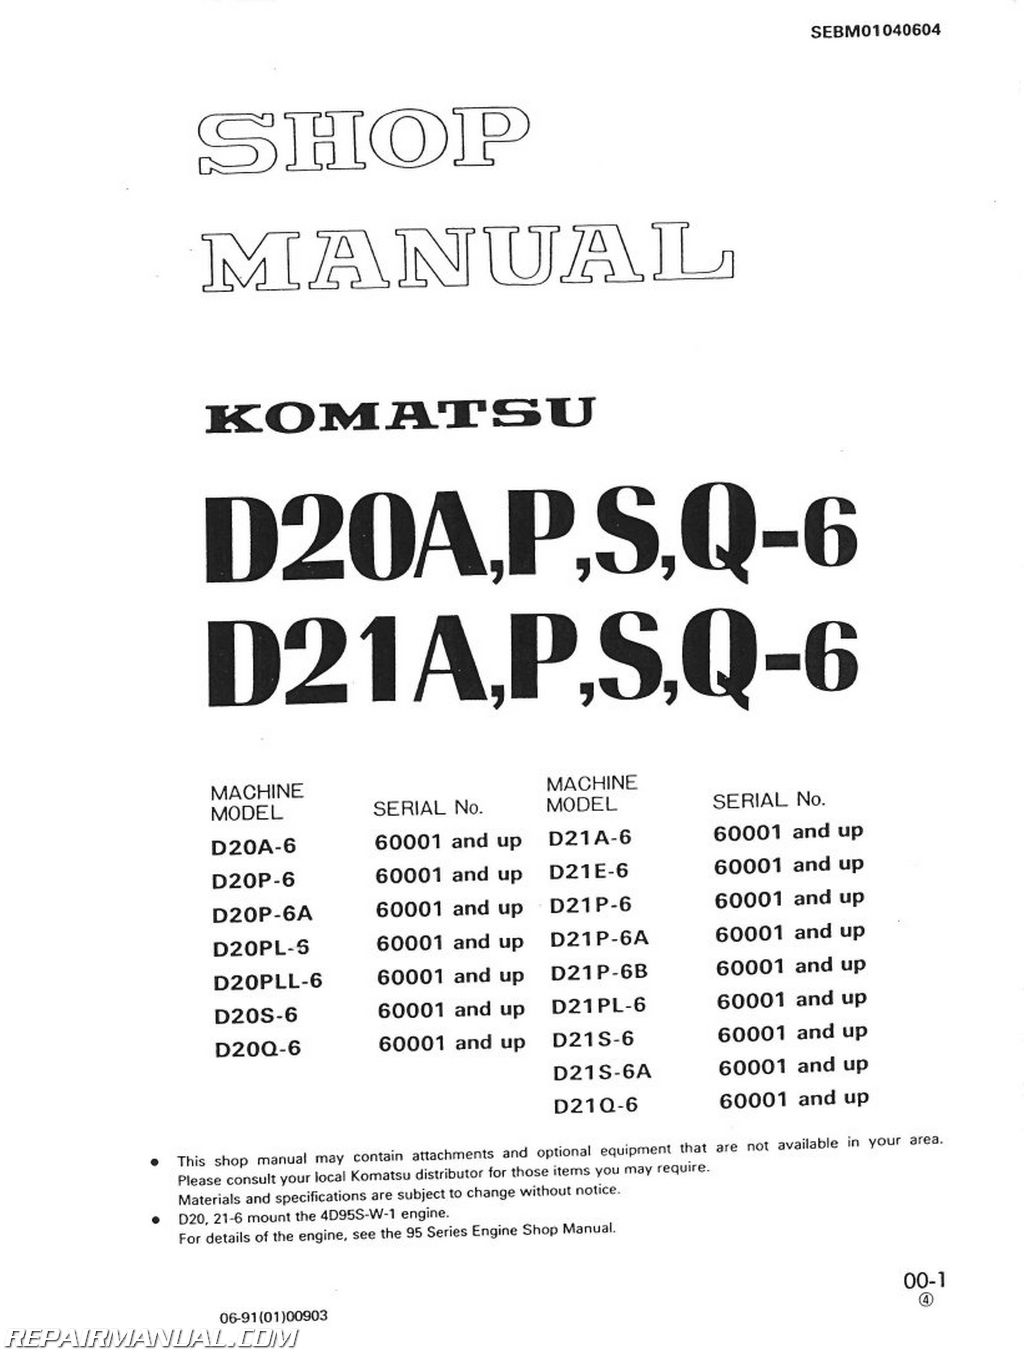 komatsu serial number decoder